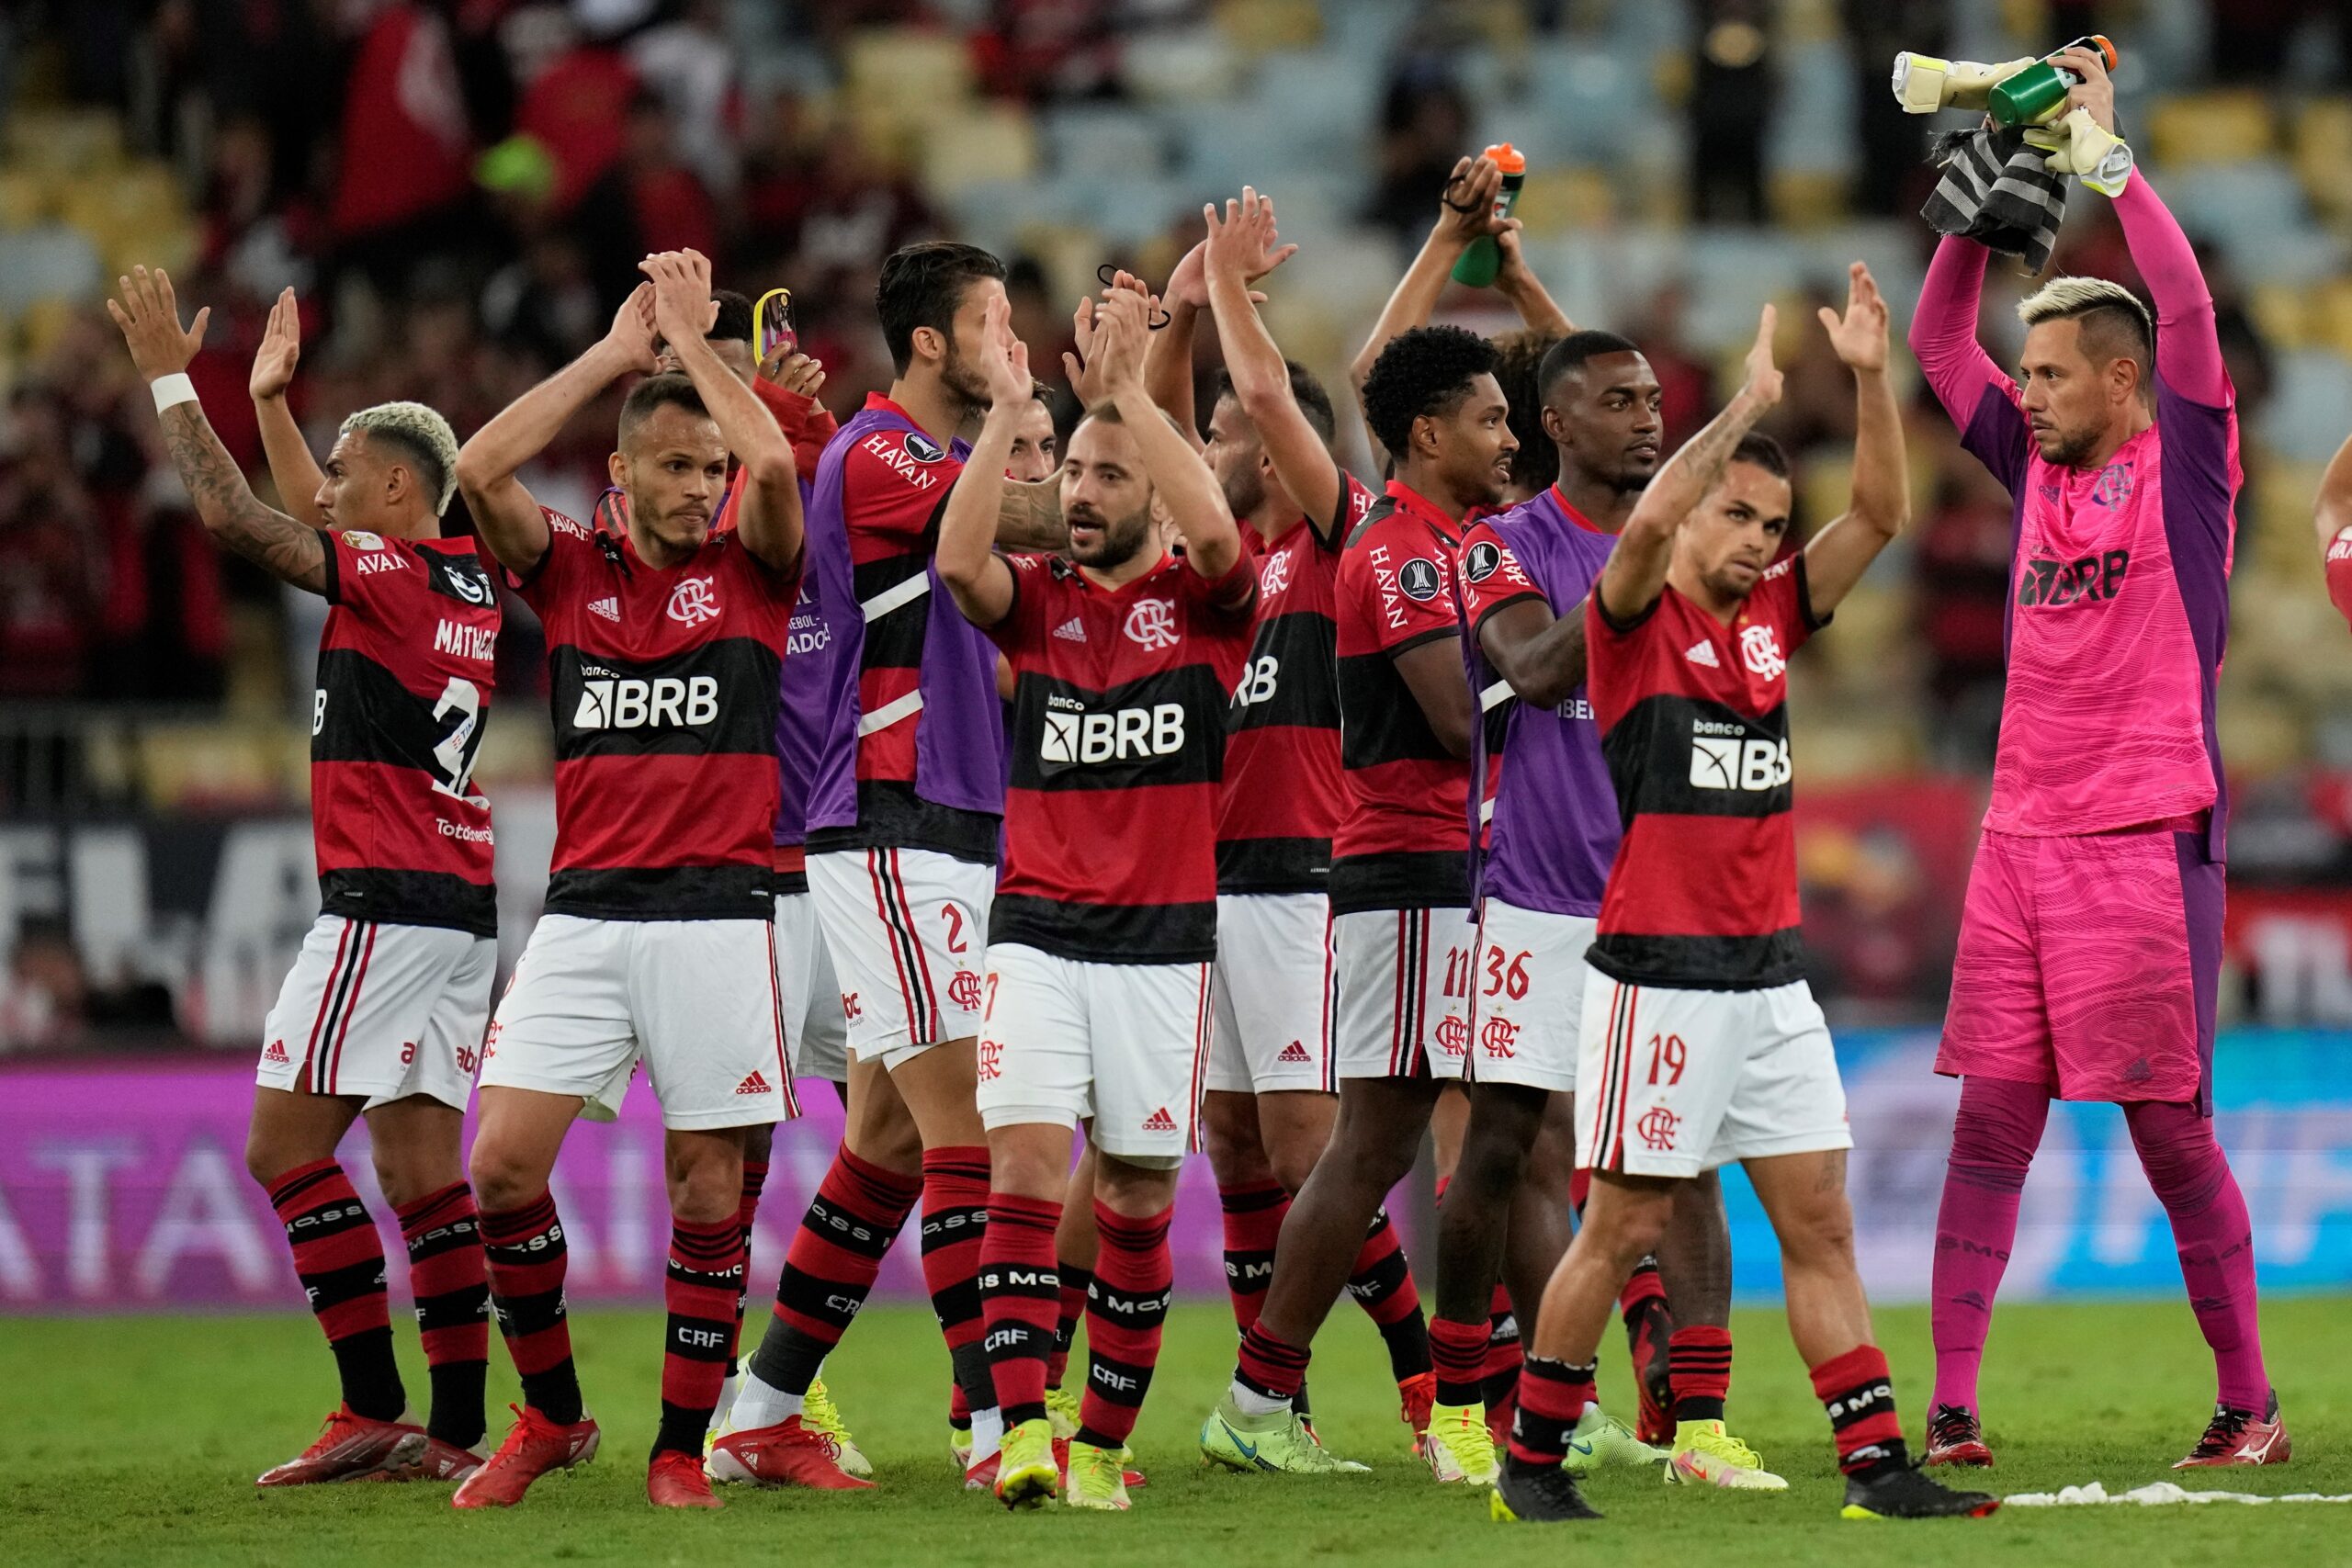 Los jugadores de Flamengo celebran hoy, al final de un partido de las semifinales de la Copa Libertadores entre Flamengo y Barcelona Sc en el estadio Maracaná en Río de Janeiro (Brasil). EFE/Silvia Izquierdo POOL